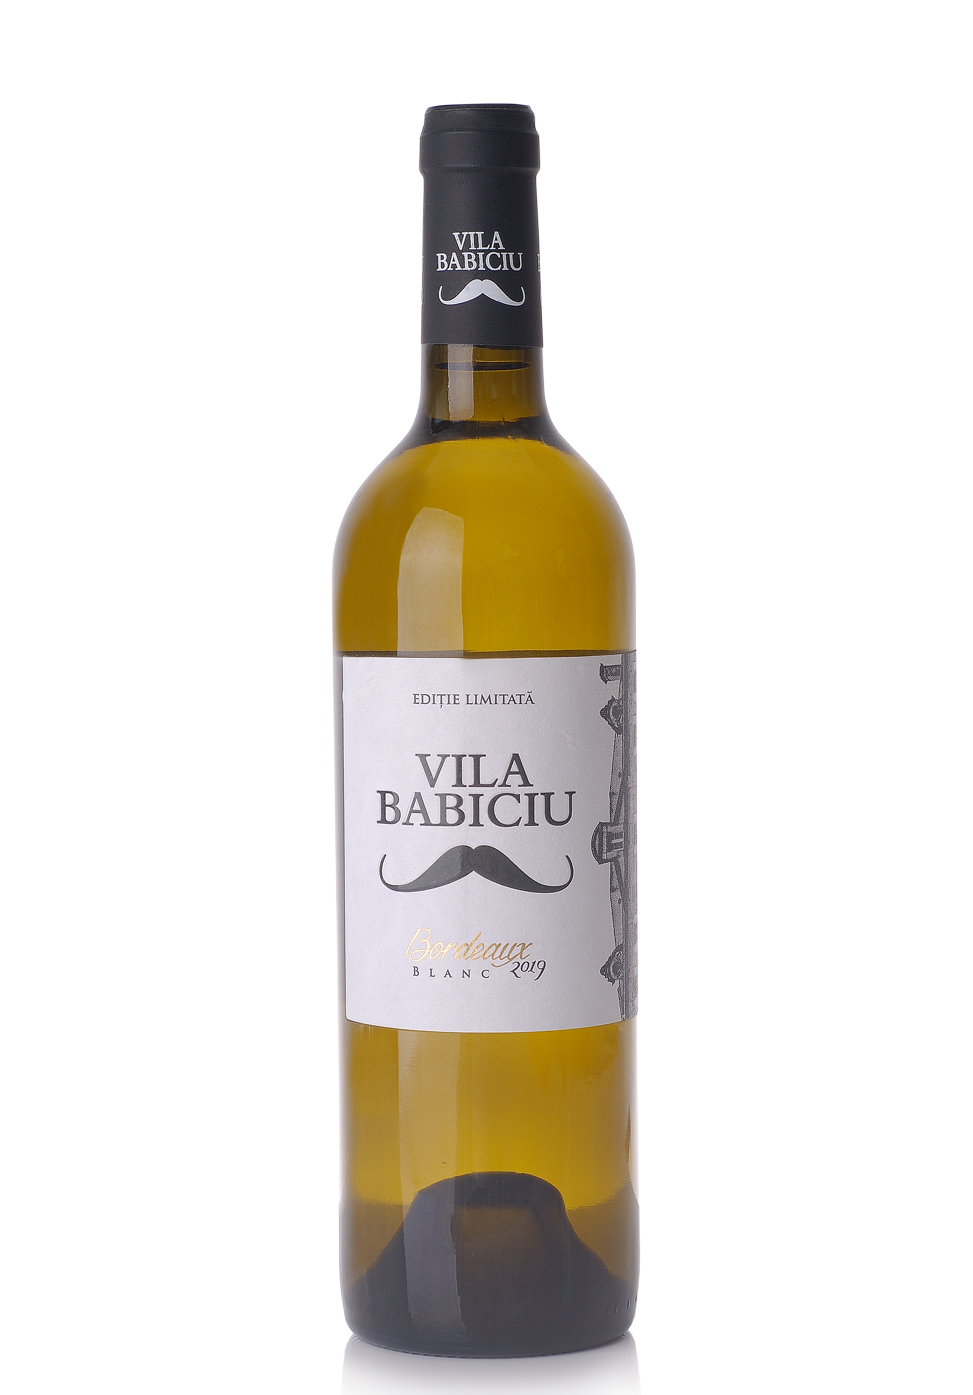 Vin Vila Babiciu Bordeaux Blanc 2019, Editie limitata (0.75L) Image